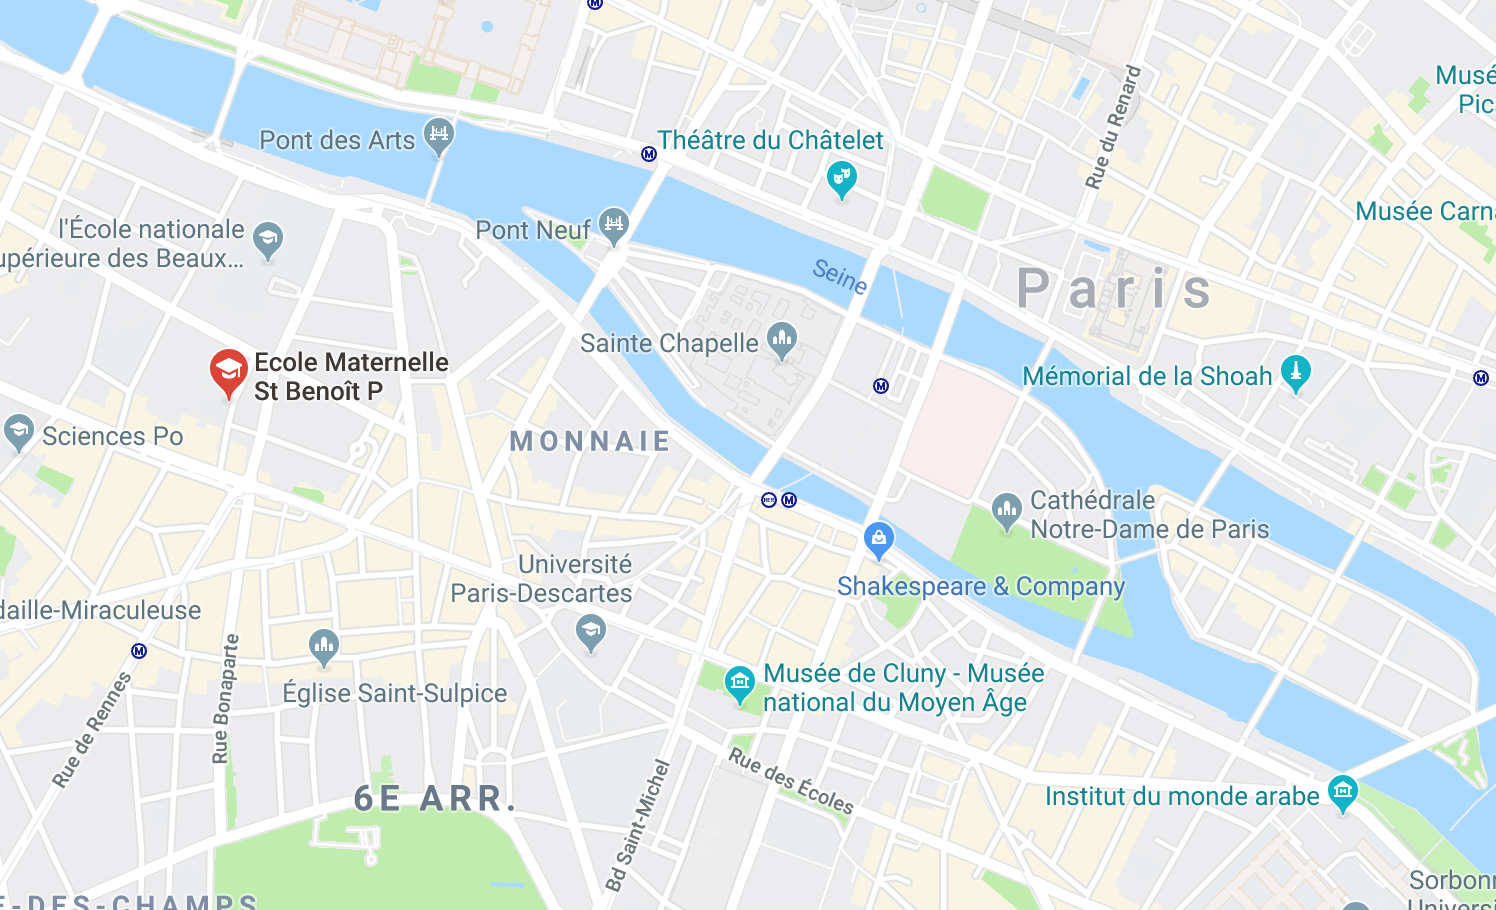 ecole_st_benoit_vie_6e_arrondissement_plan_google_maps_5d4952e266c44.jpg